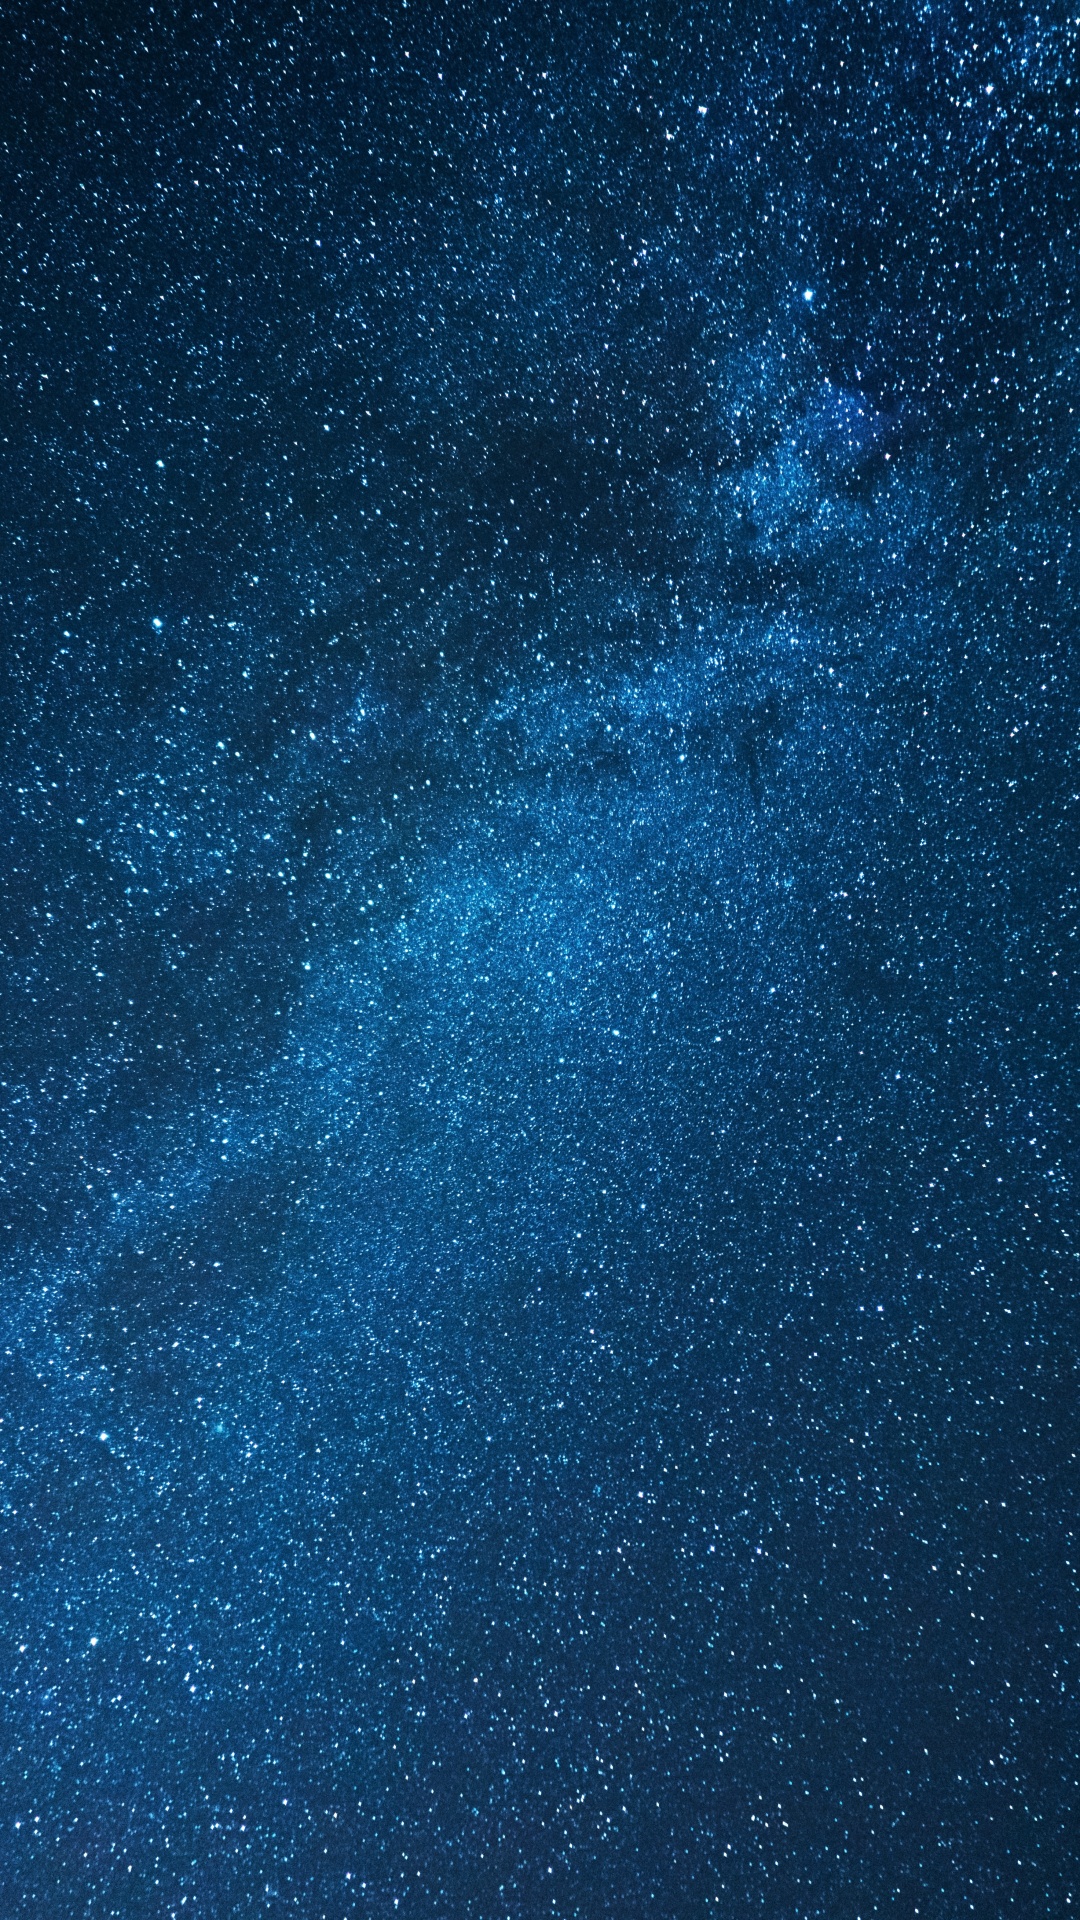 Cielo Estrellado Azul y Blanco. Wallpaper in 1080x1920 Resolution